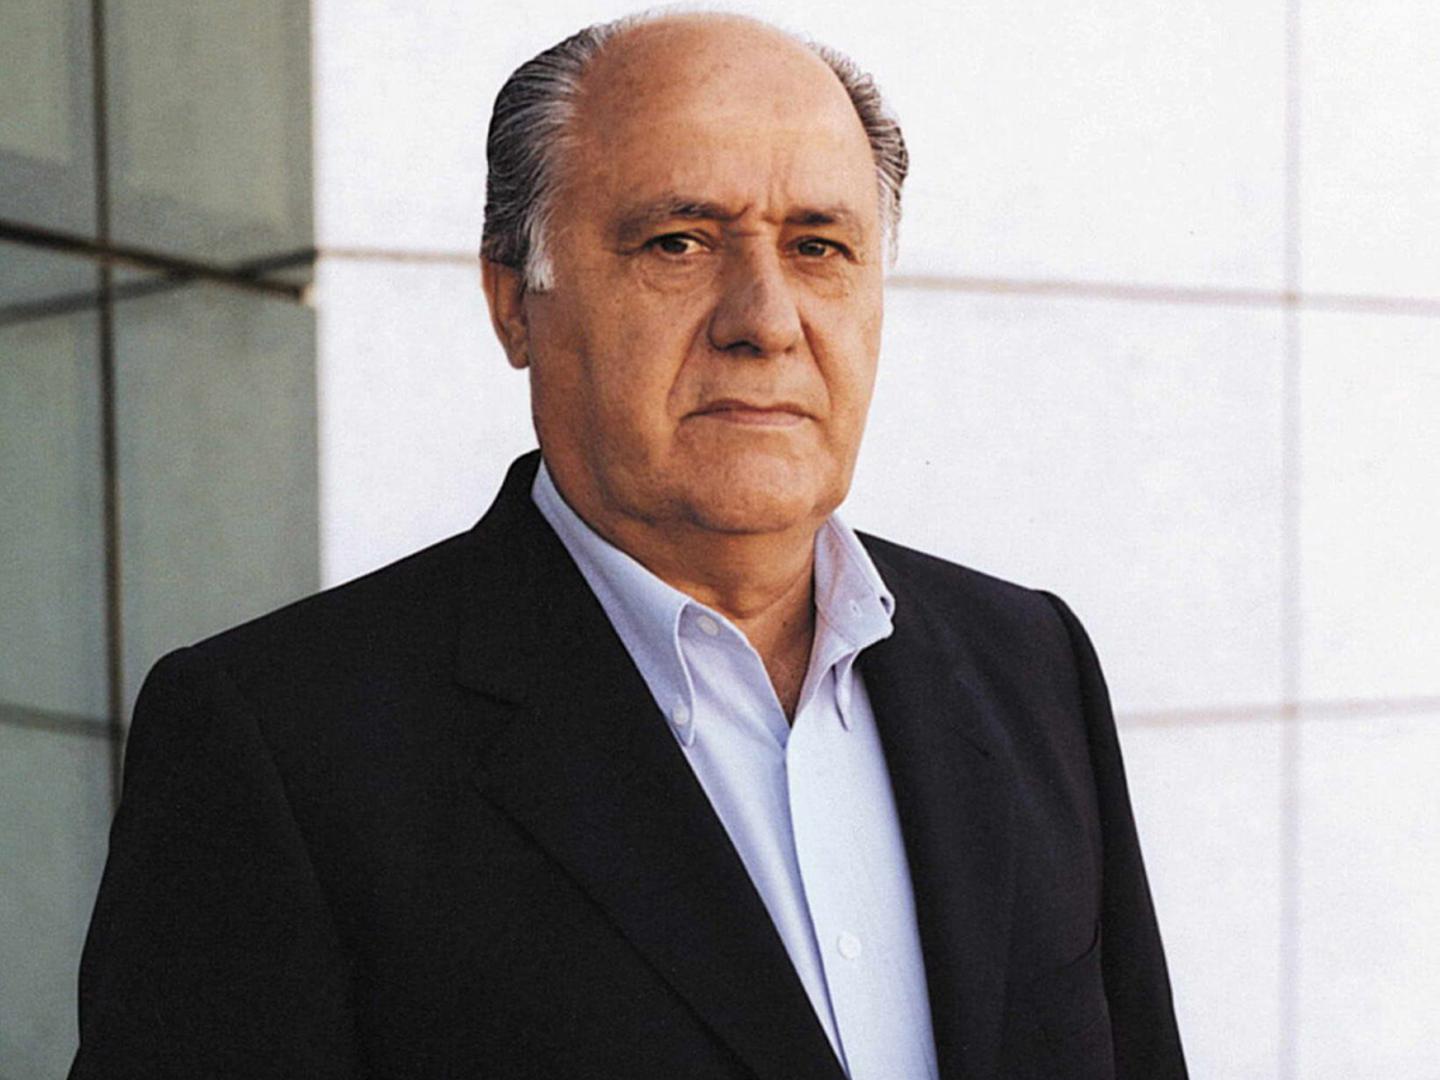 4. Amancio Ortega (Španjolska) - vlasnik 59 posto Inditexa u čijem vlasništvu je Zara - 71.3 milijardi dolara